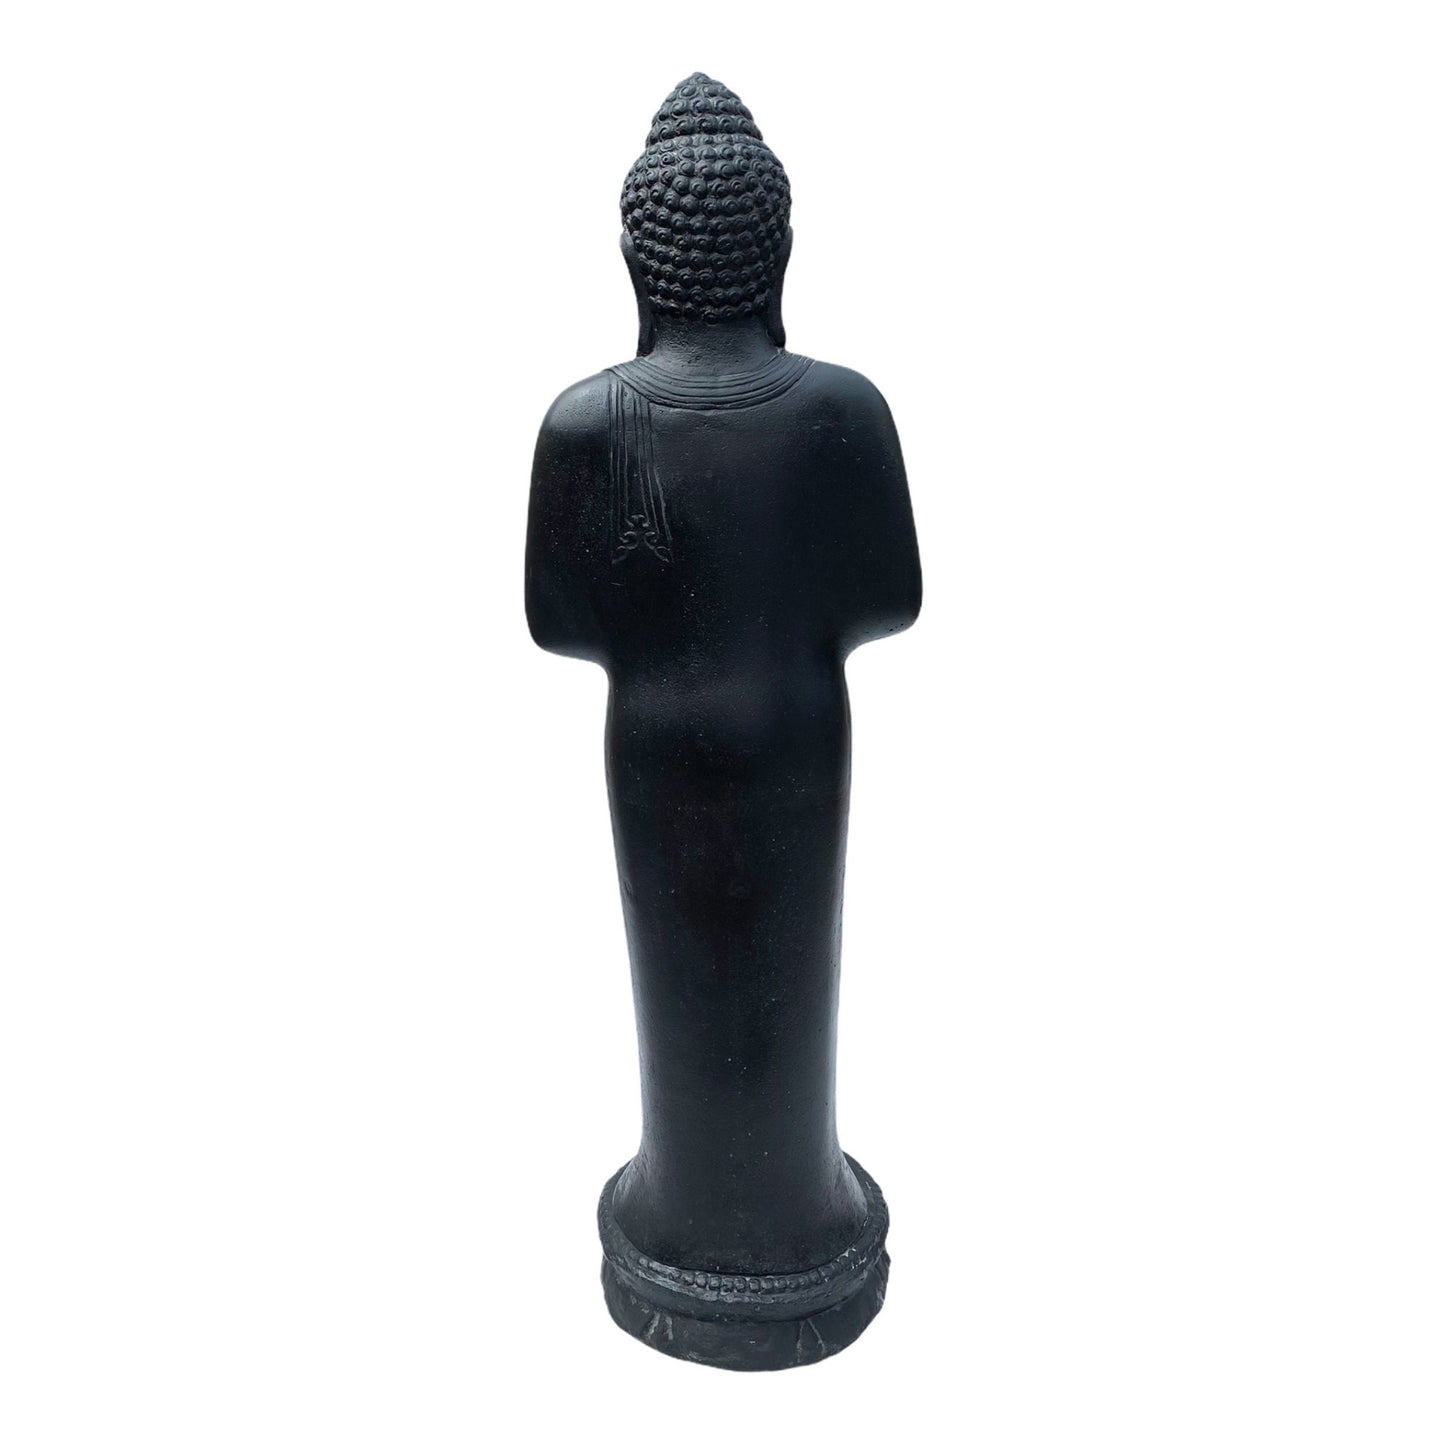 Buddha Statue - Garten Deko Raumdeko - Gegossene Stein Figur Wetterfest - Lava-Sand Steingemisch - 120 cm hoch